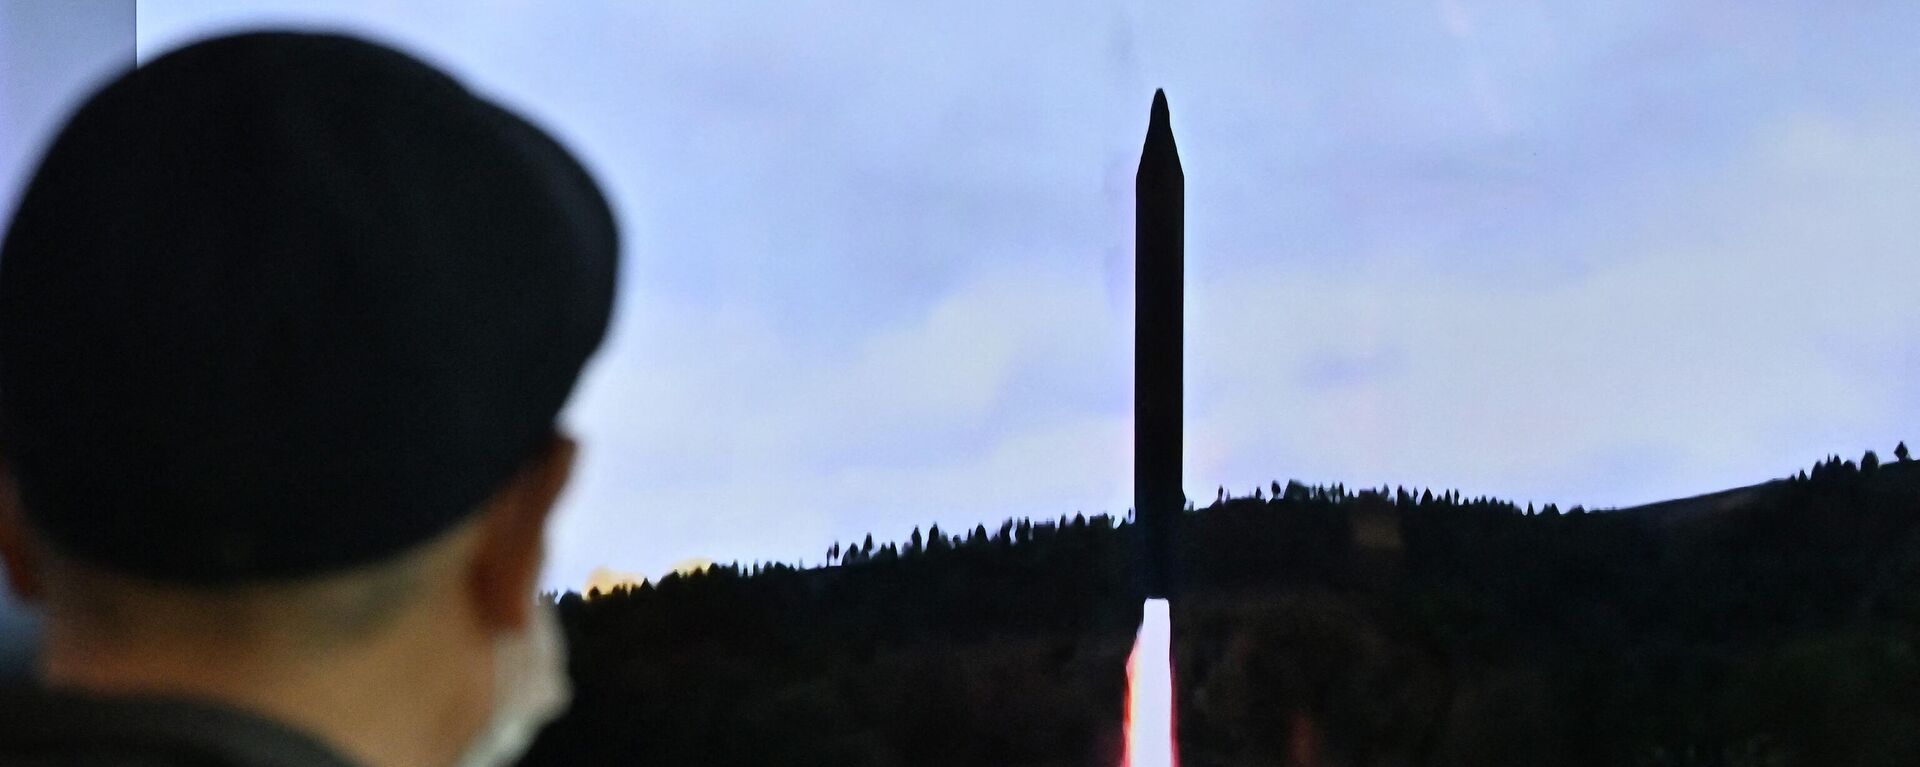 Lanzamiento de misiles por Corea del Norte - Sputnik Mundo, 1920, 02.11.2022